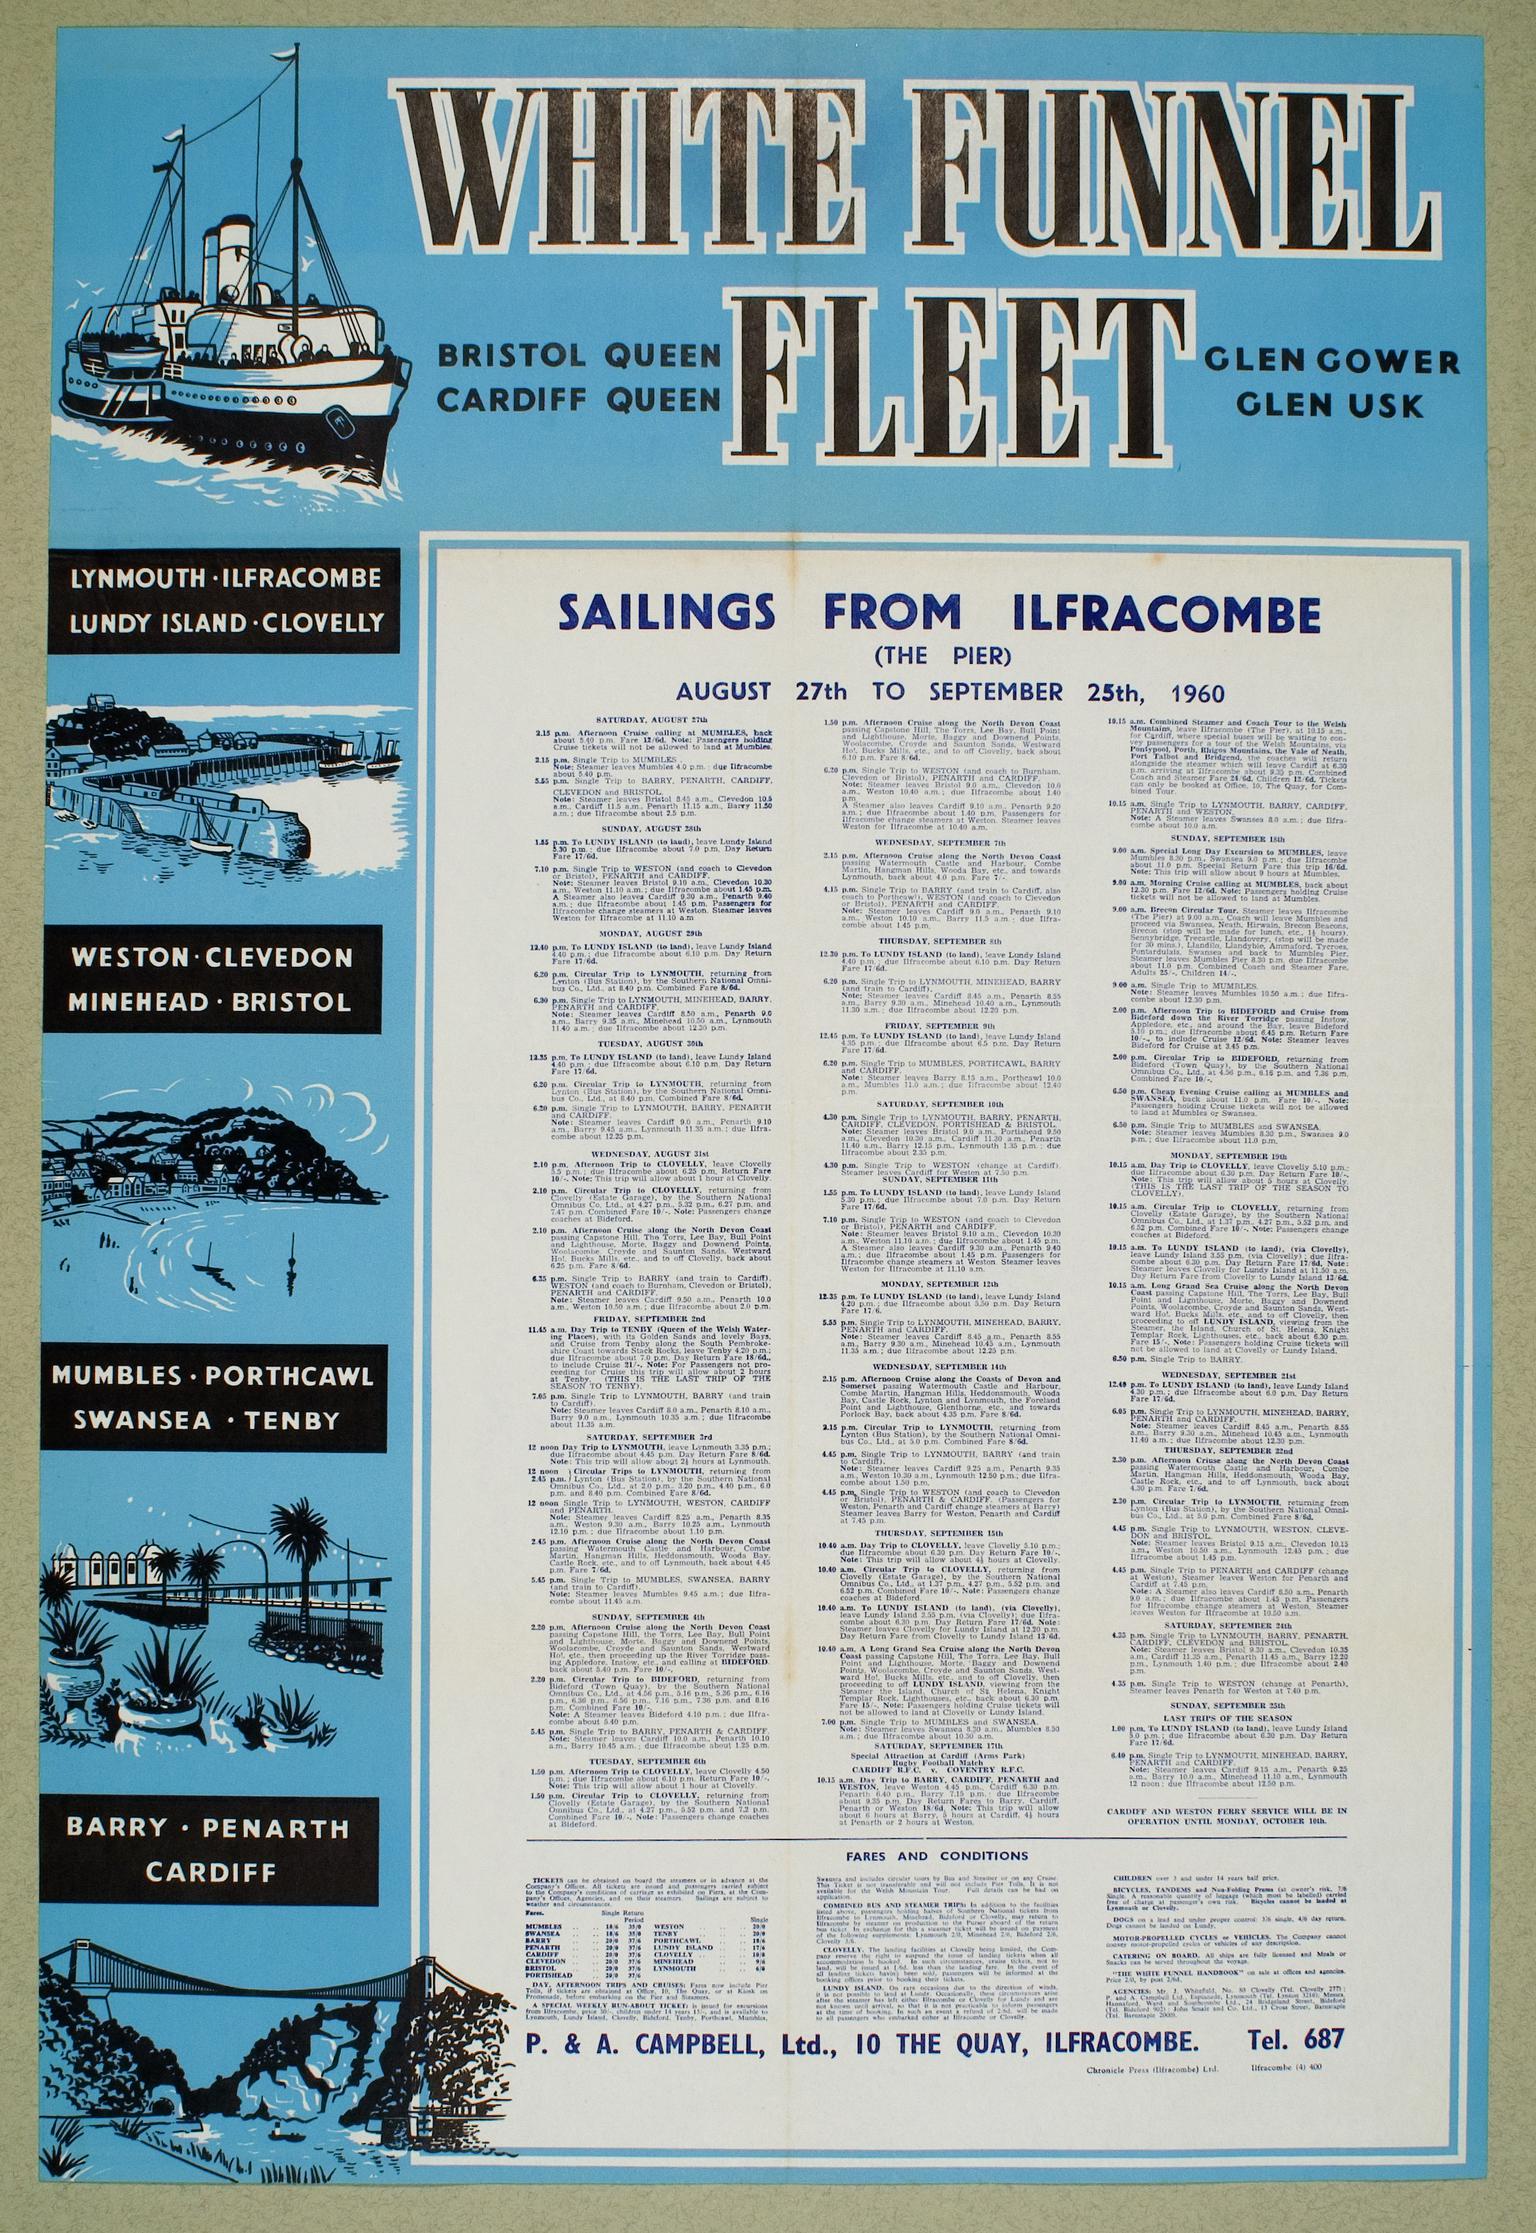 White Funnel Fleet, poster